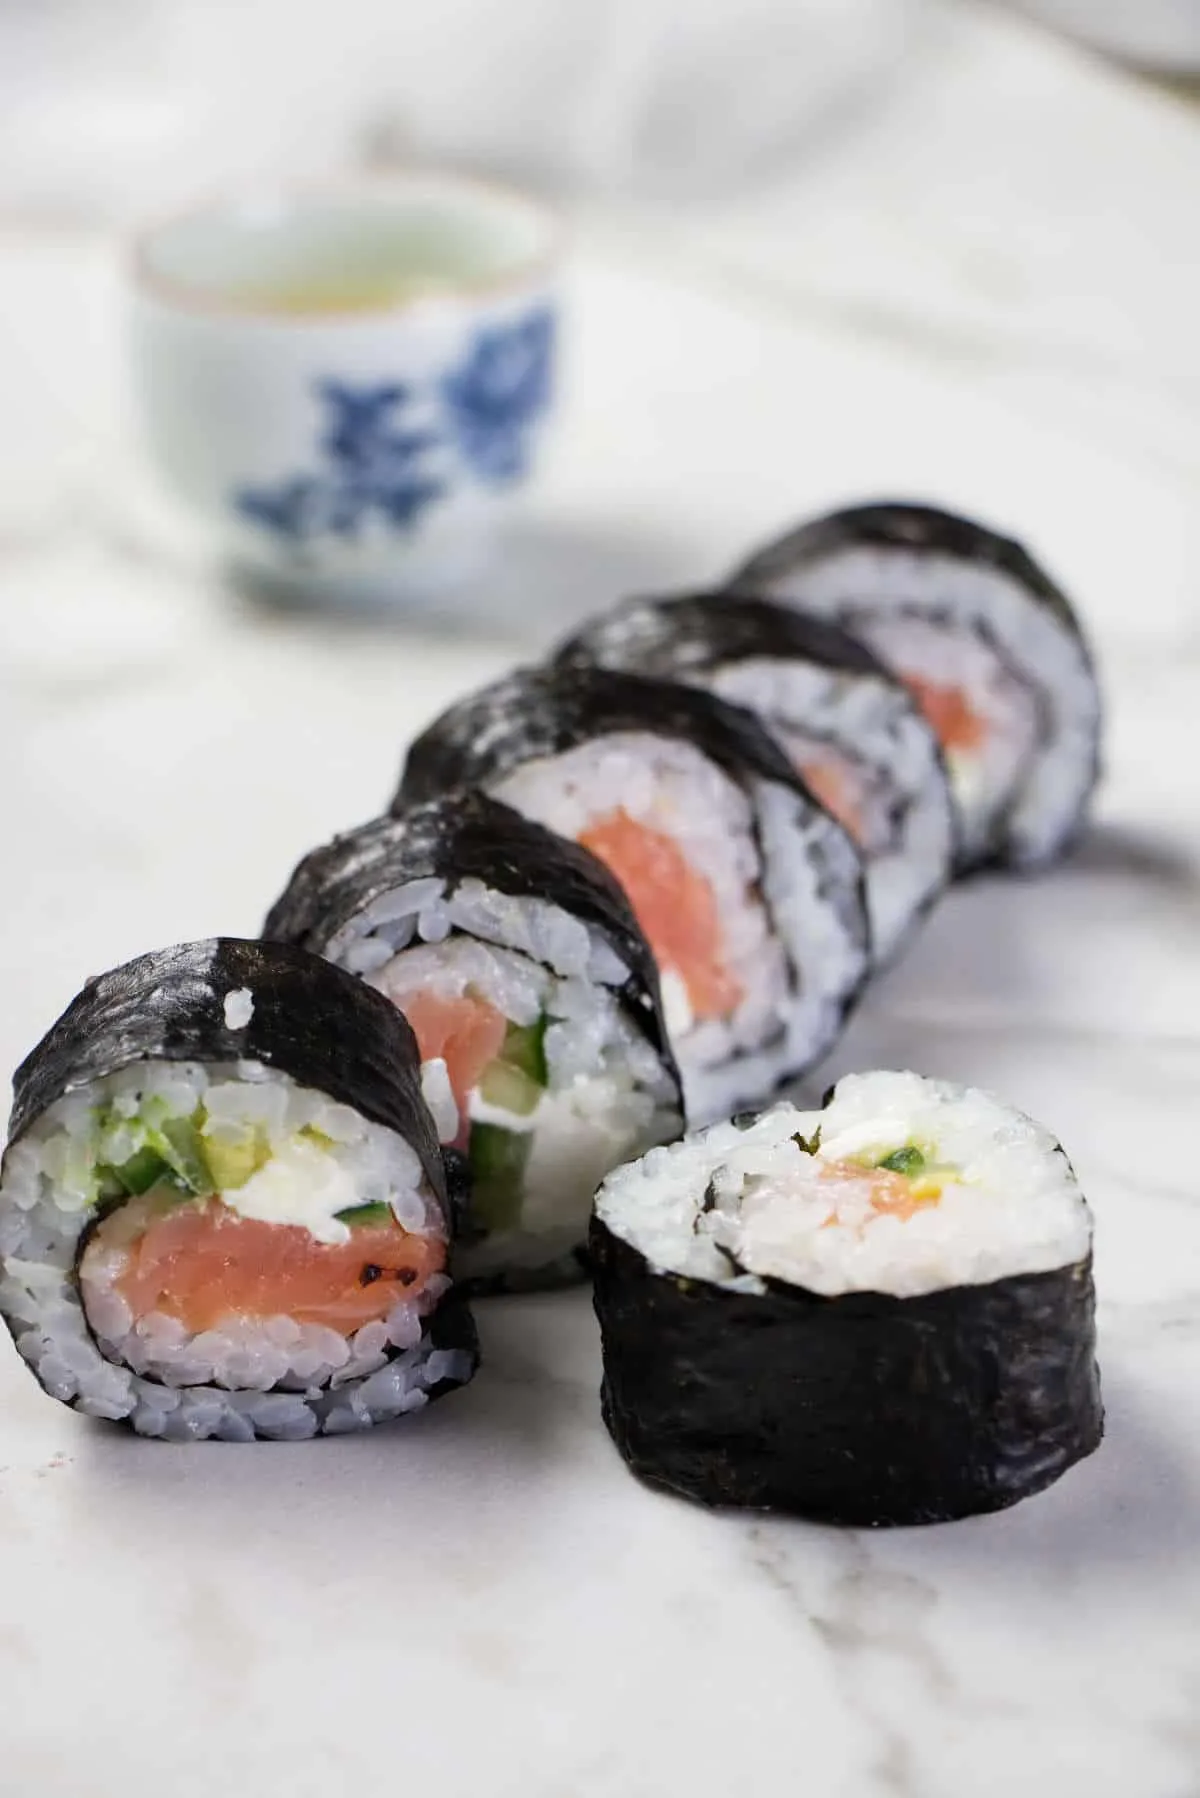 Smoked Salmon Sushi Roll Recipe